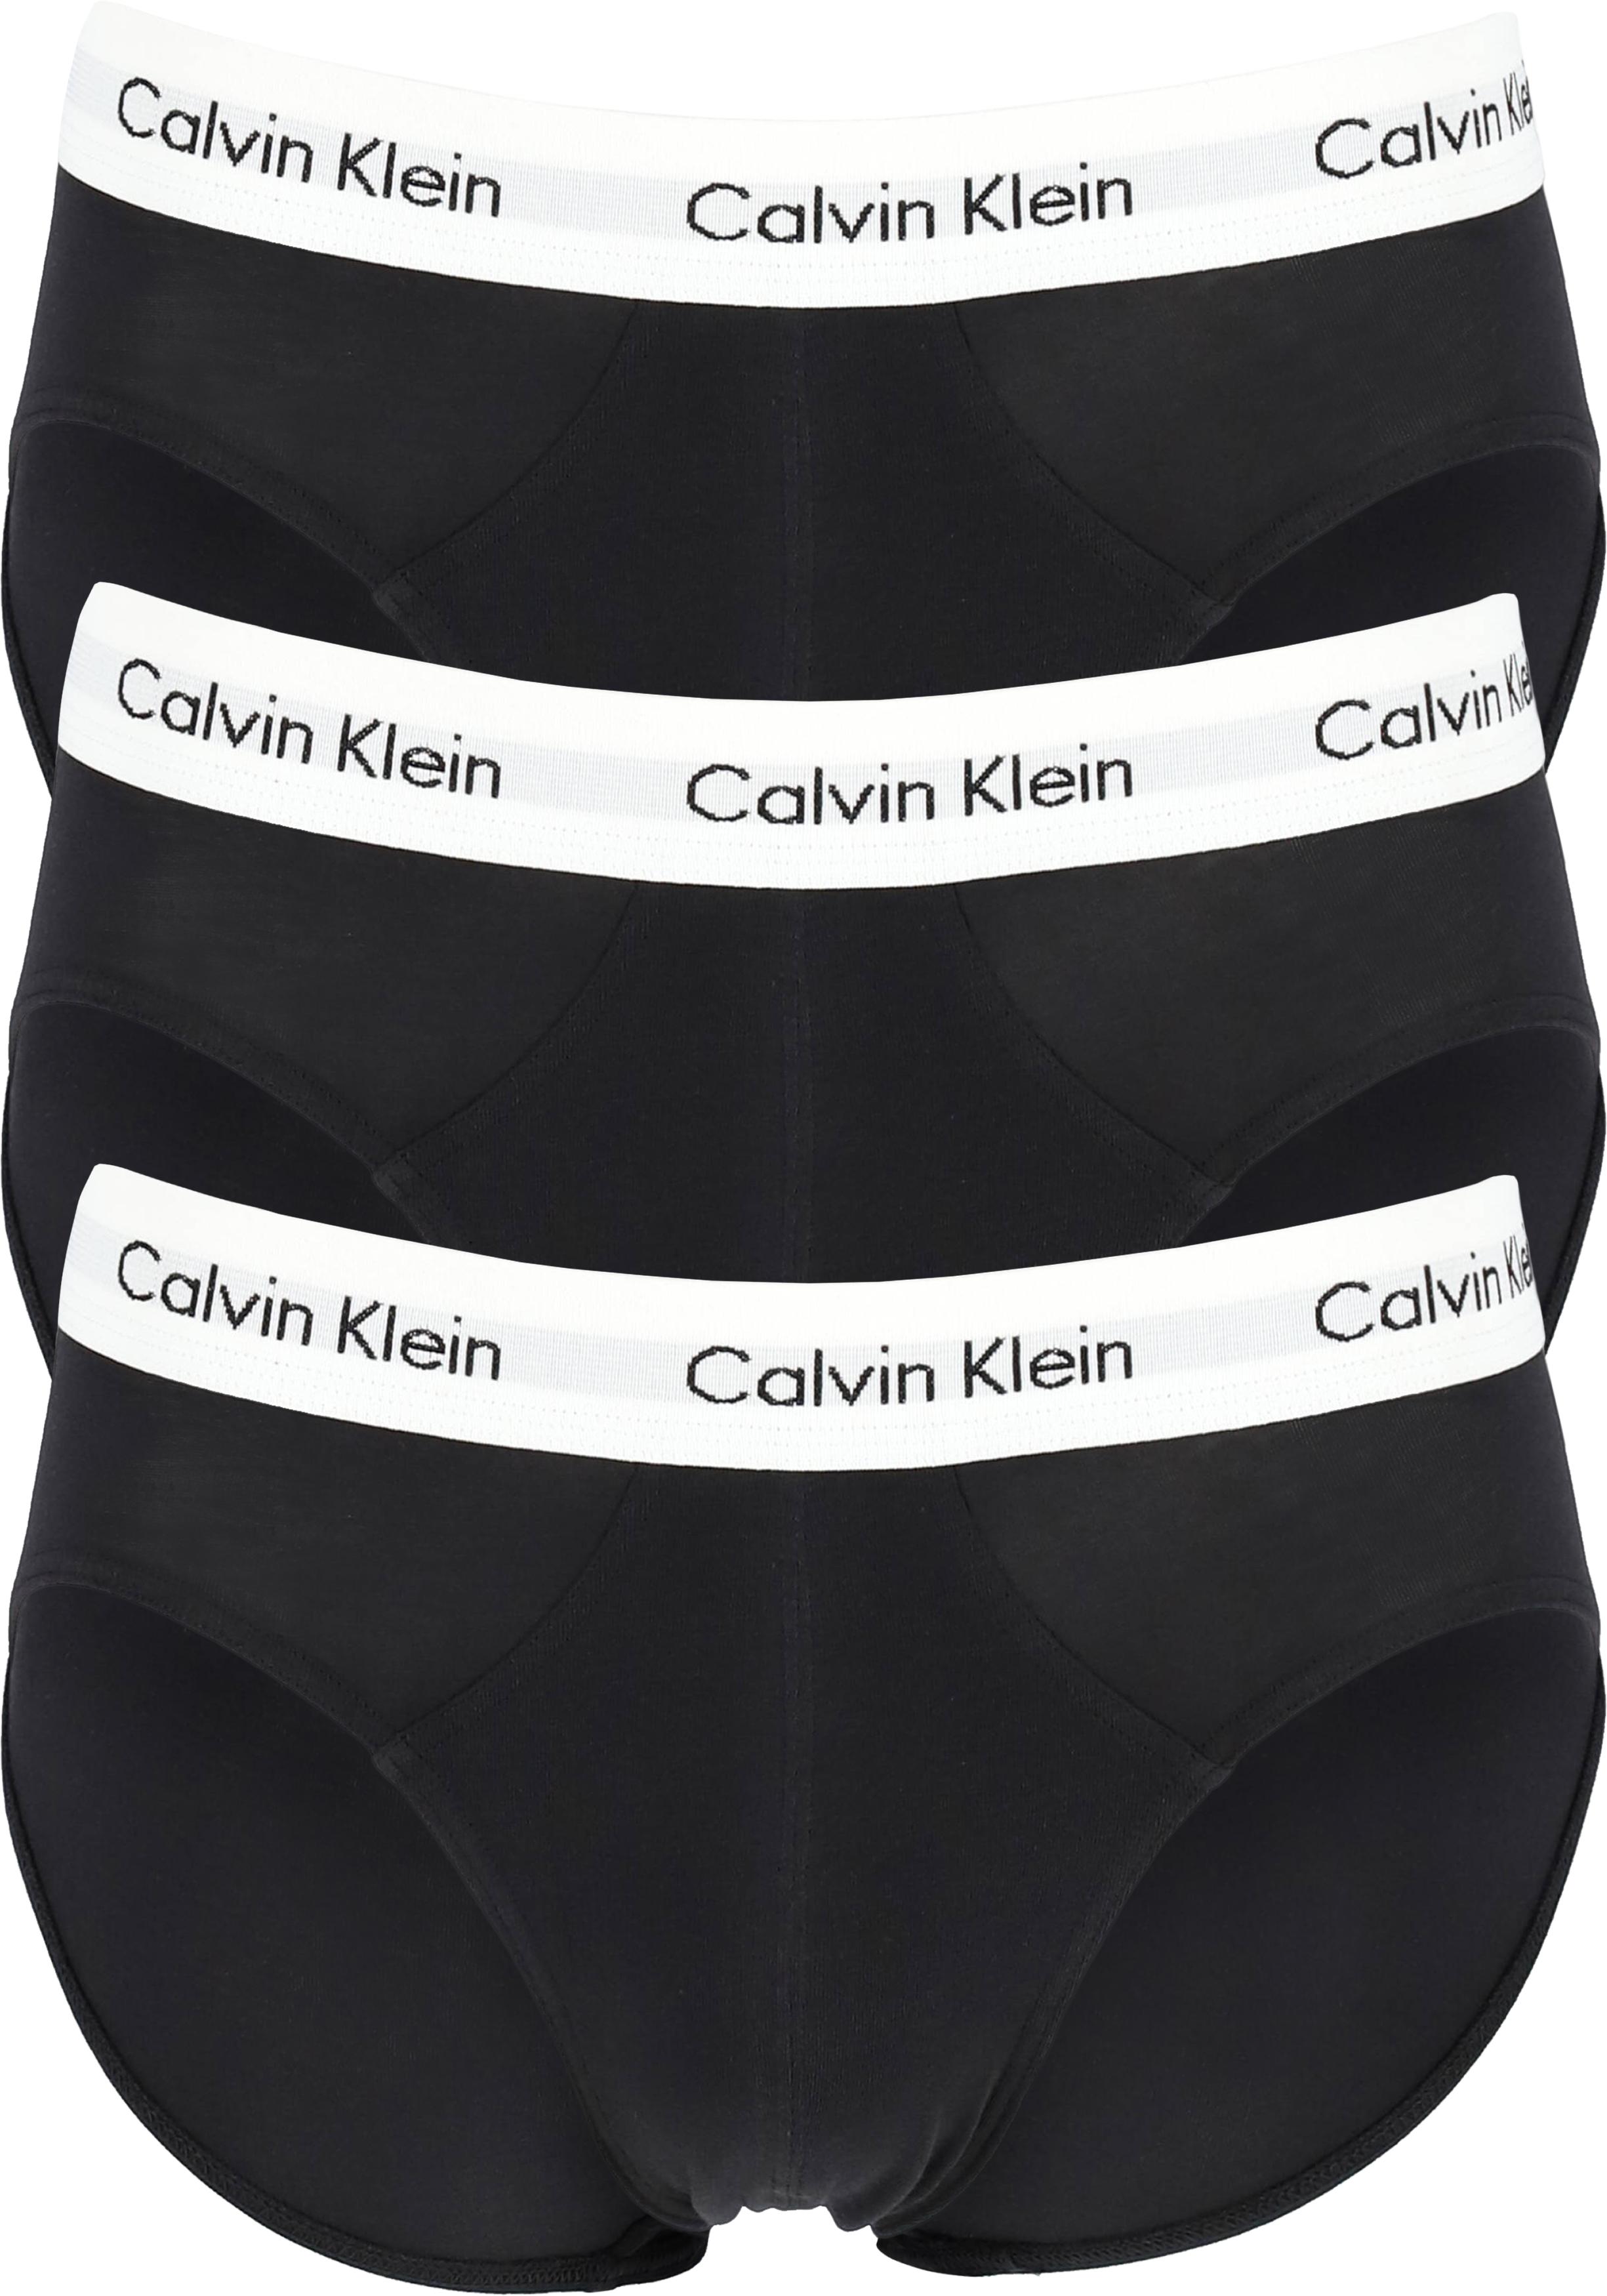 Voorafgaan Aanpassing Glad Calvin Klein hipster brief (3-pack), heren slips, zwart met witte band -  Shop de nieuwste voorjaarsmode